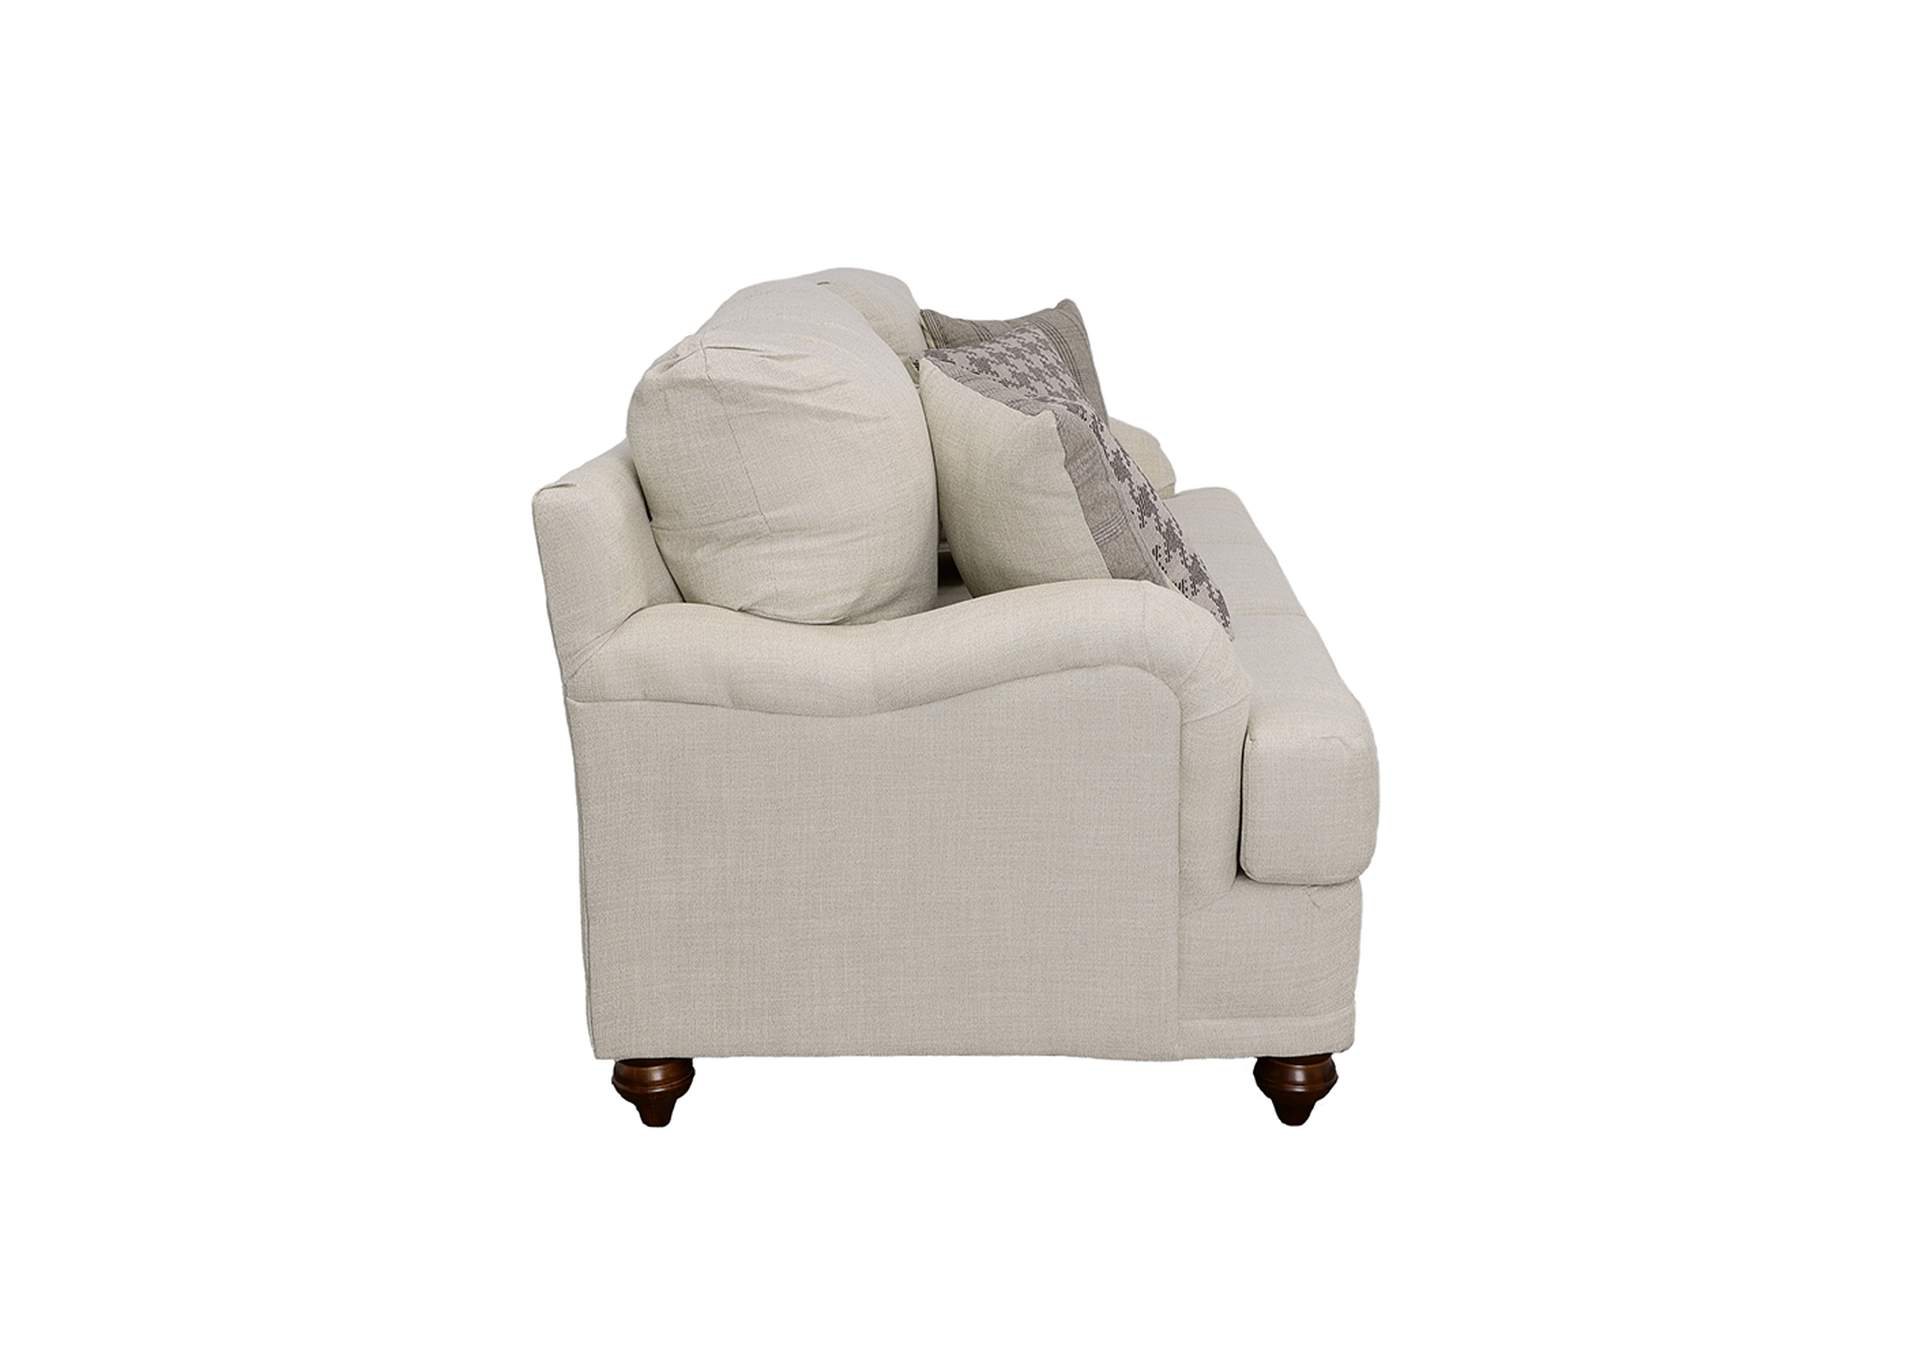 Glenn Cushion Back Sofa Light Grey,Coaster Furniture